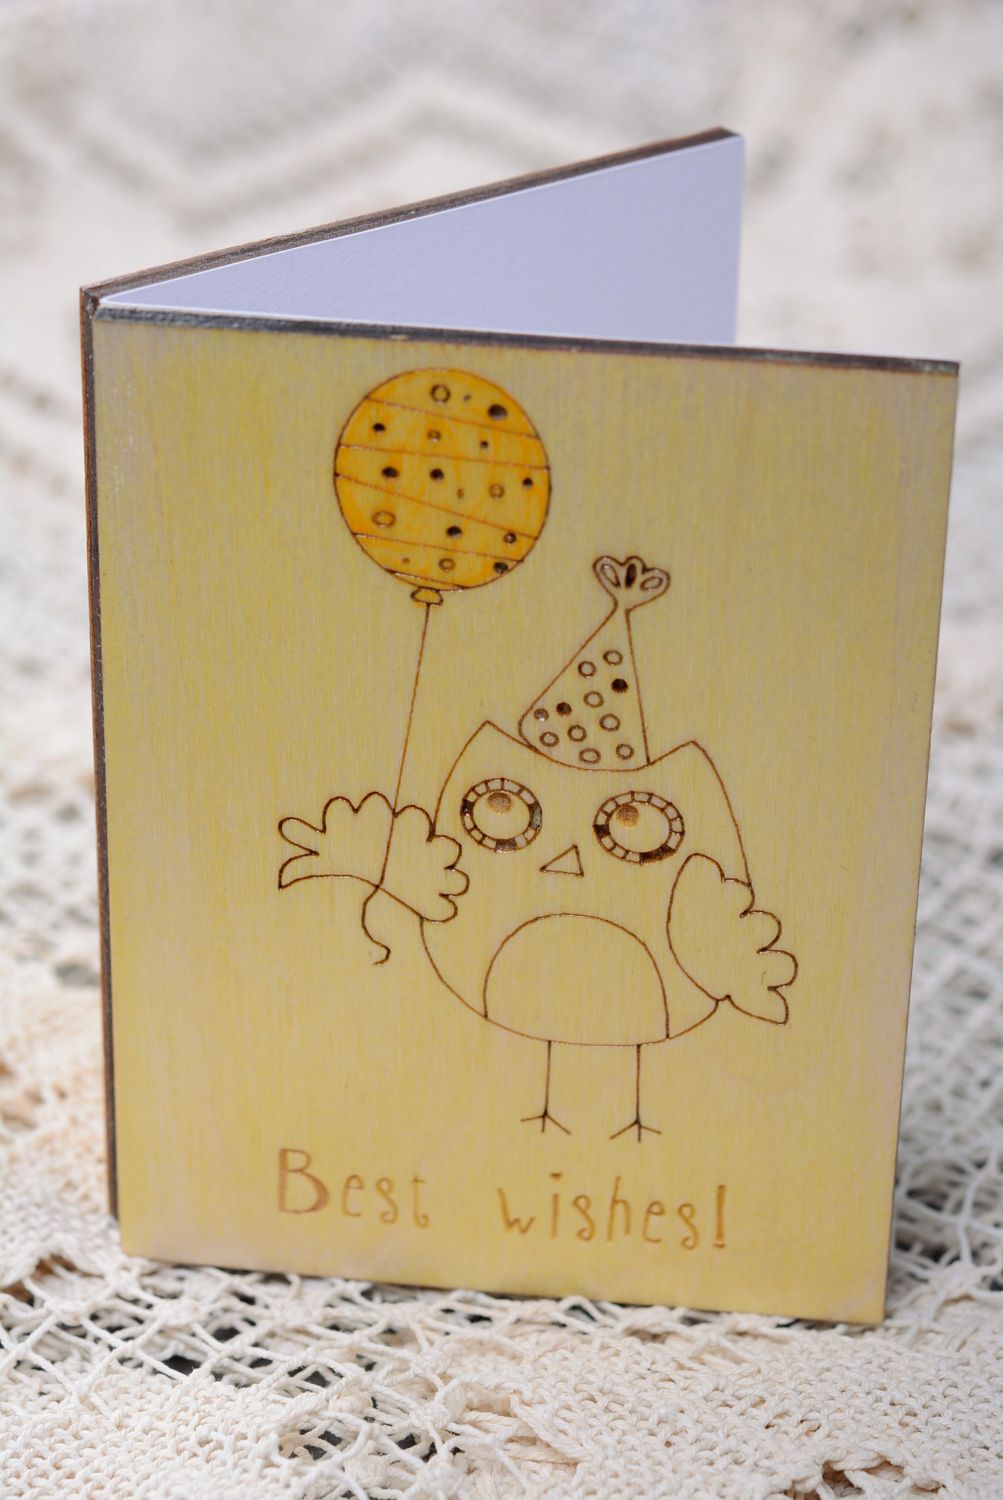 Belle carte de voeux en bois faite main originale jaune avec hibou Best wishes photo 1